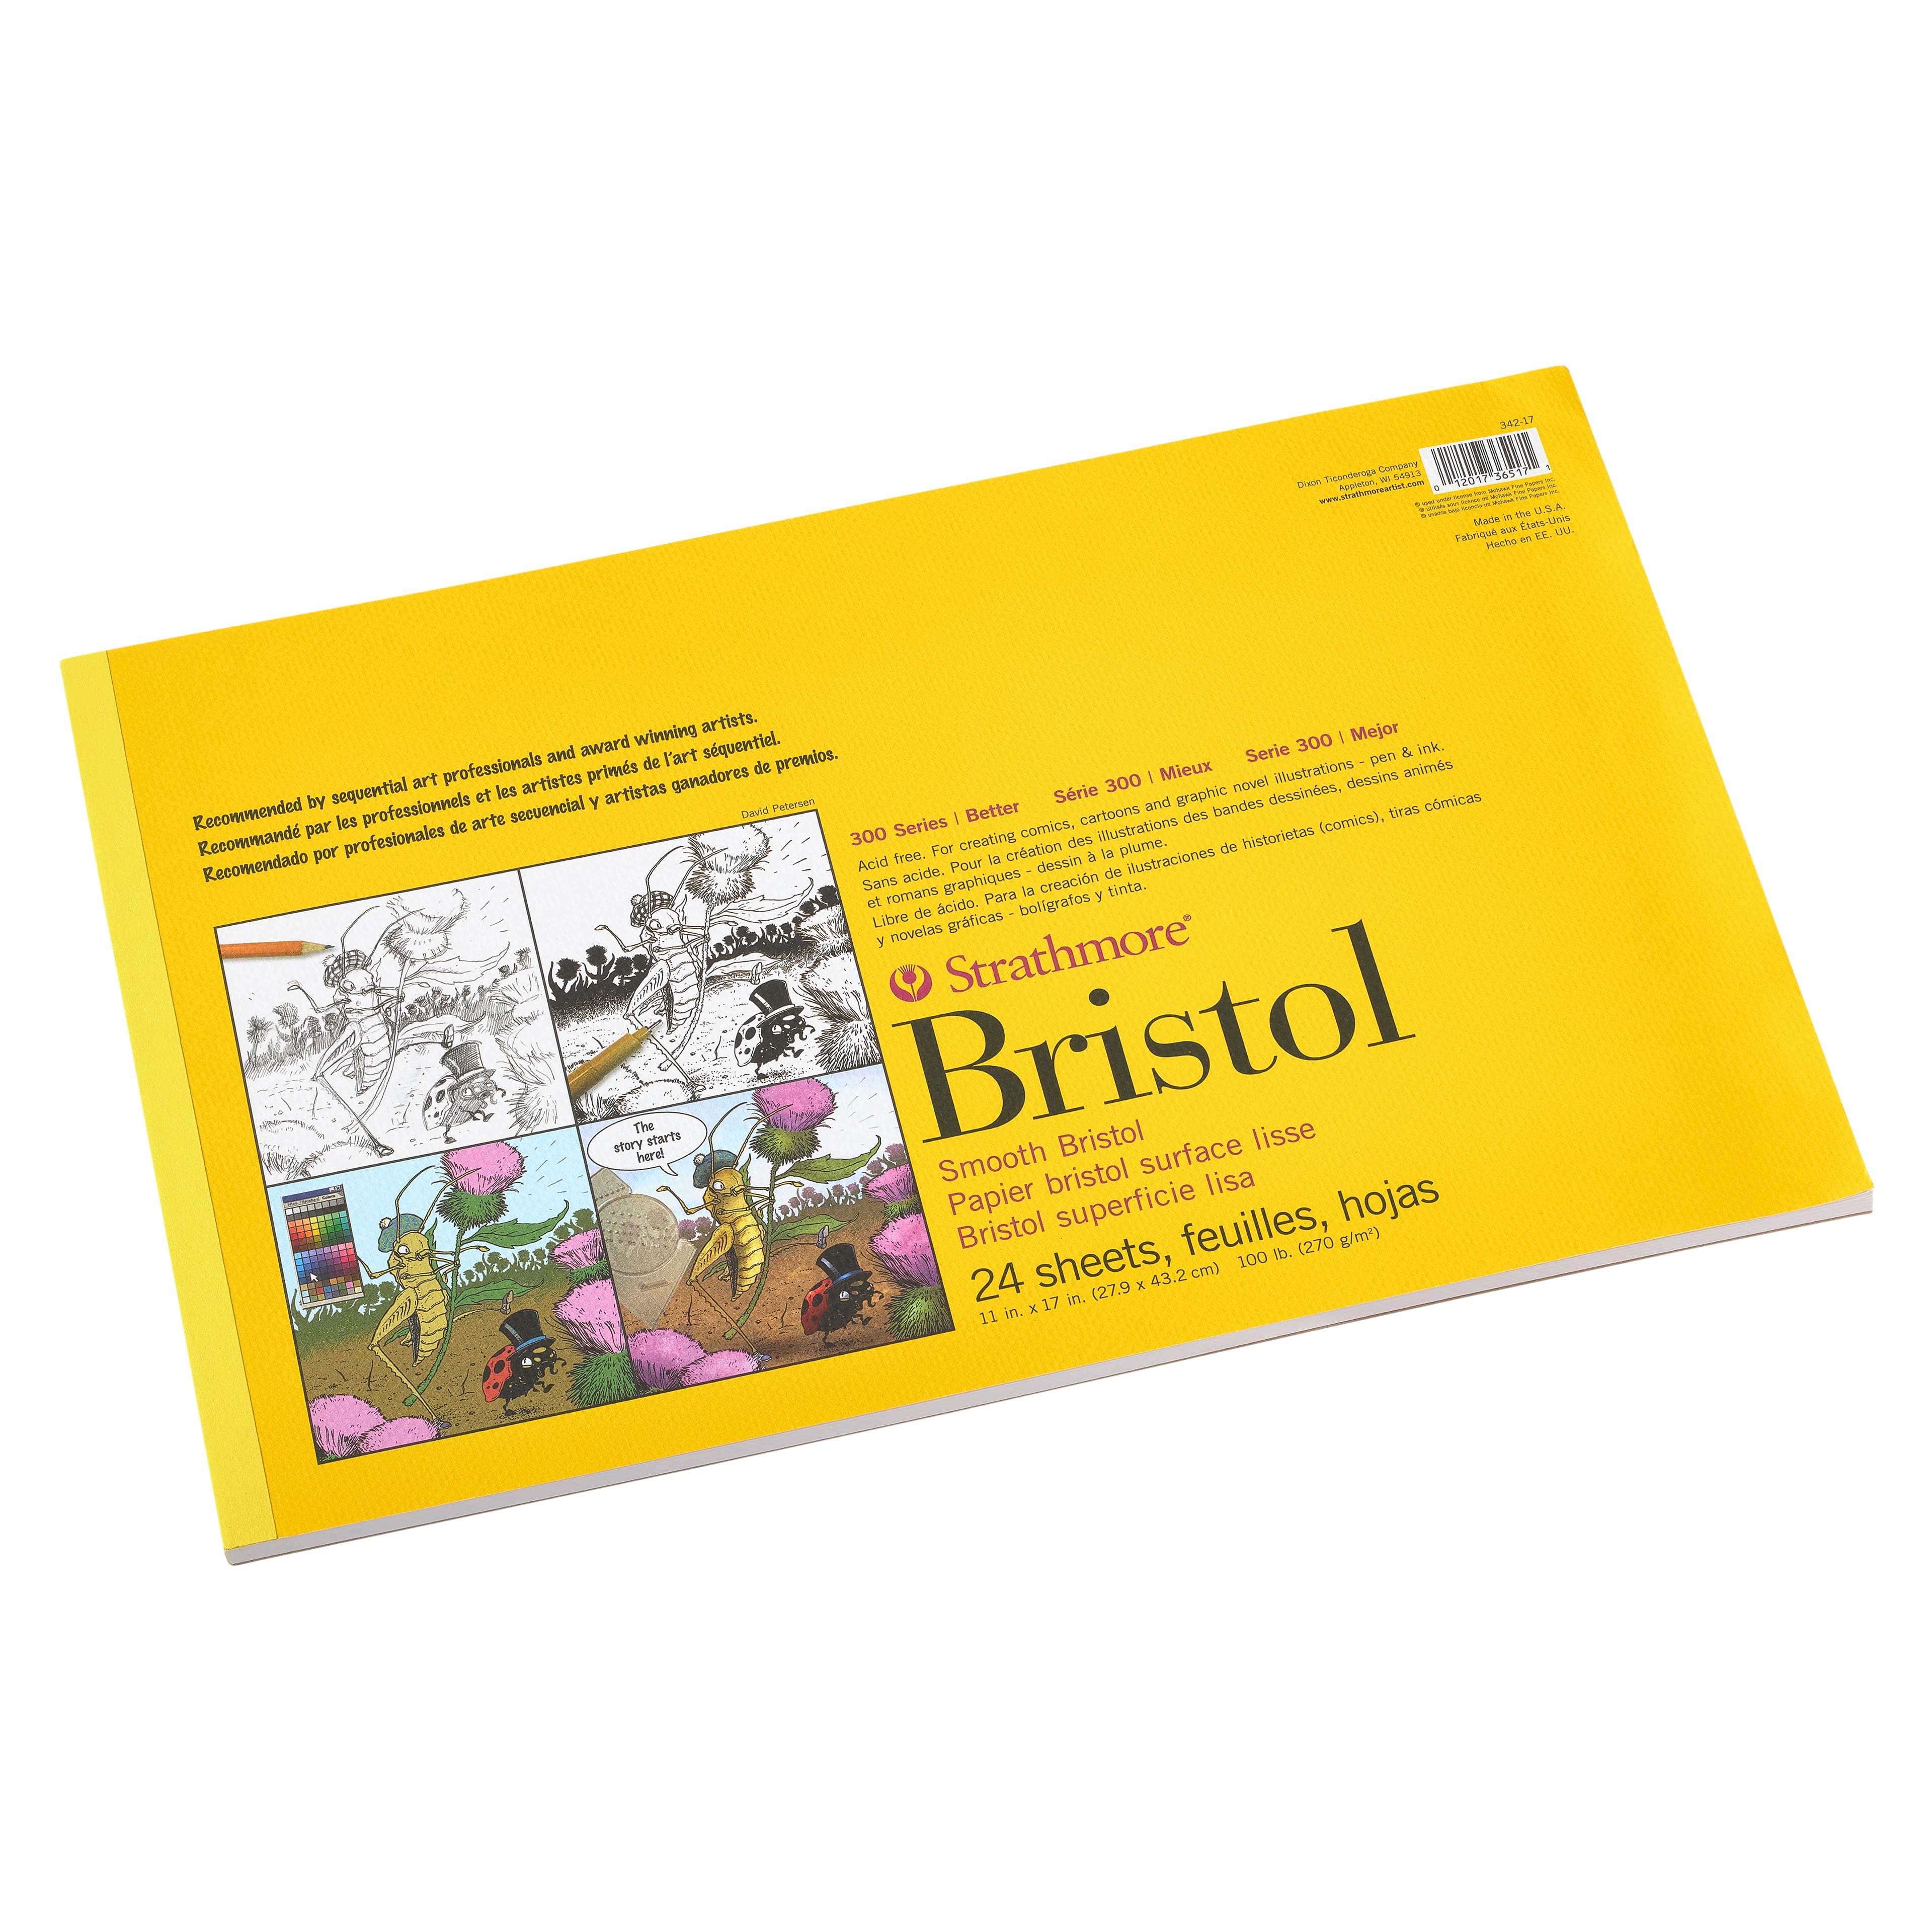 Bristol Board / Artist's Board / 4 Ply / 8 1/2 by 11 Card Stock